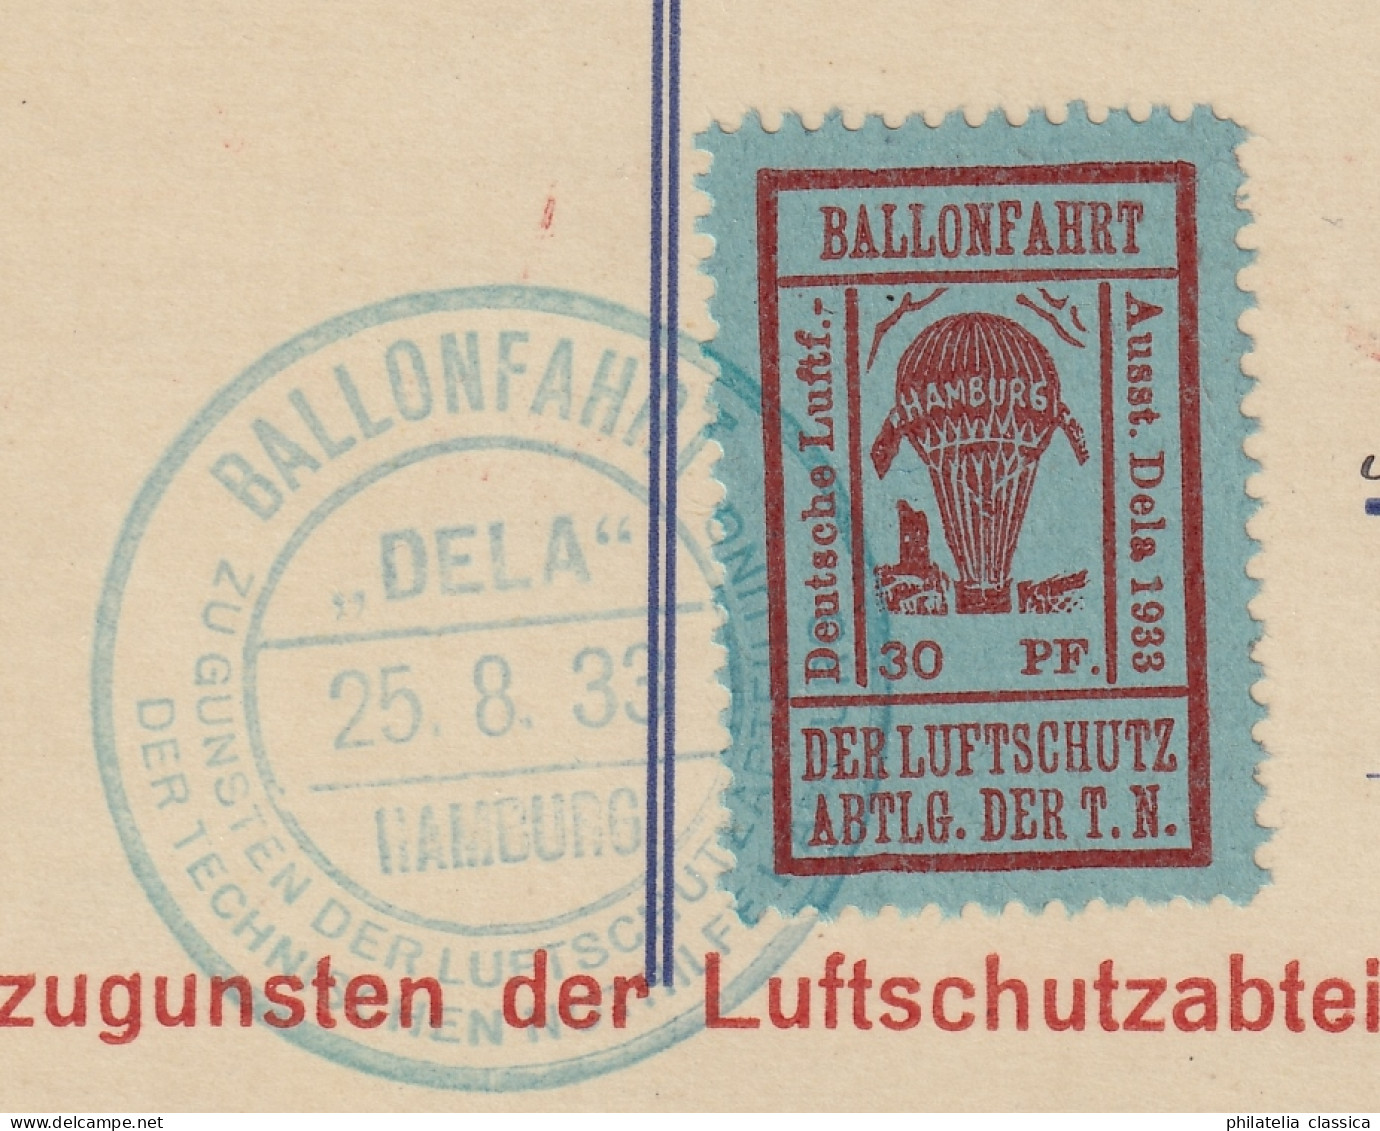 Flugmarke  21 B, Auf Ballonfahrtkarte, Auflage Nur 600 Stück, SELTEN, KW 380,- € - Emissions De Nécessité Zone Britannique